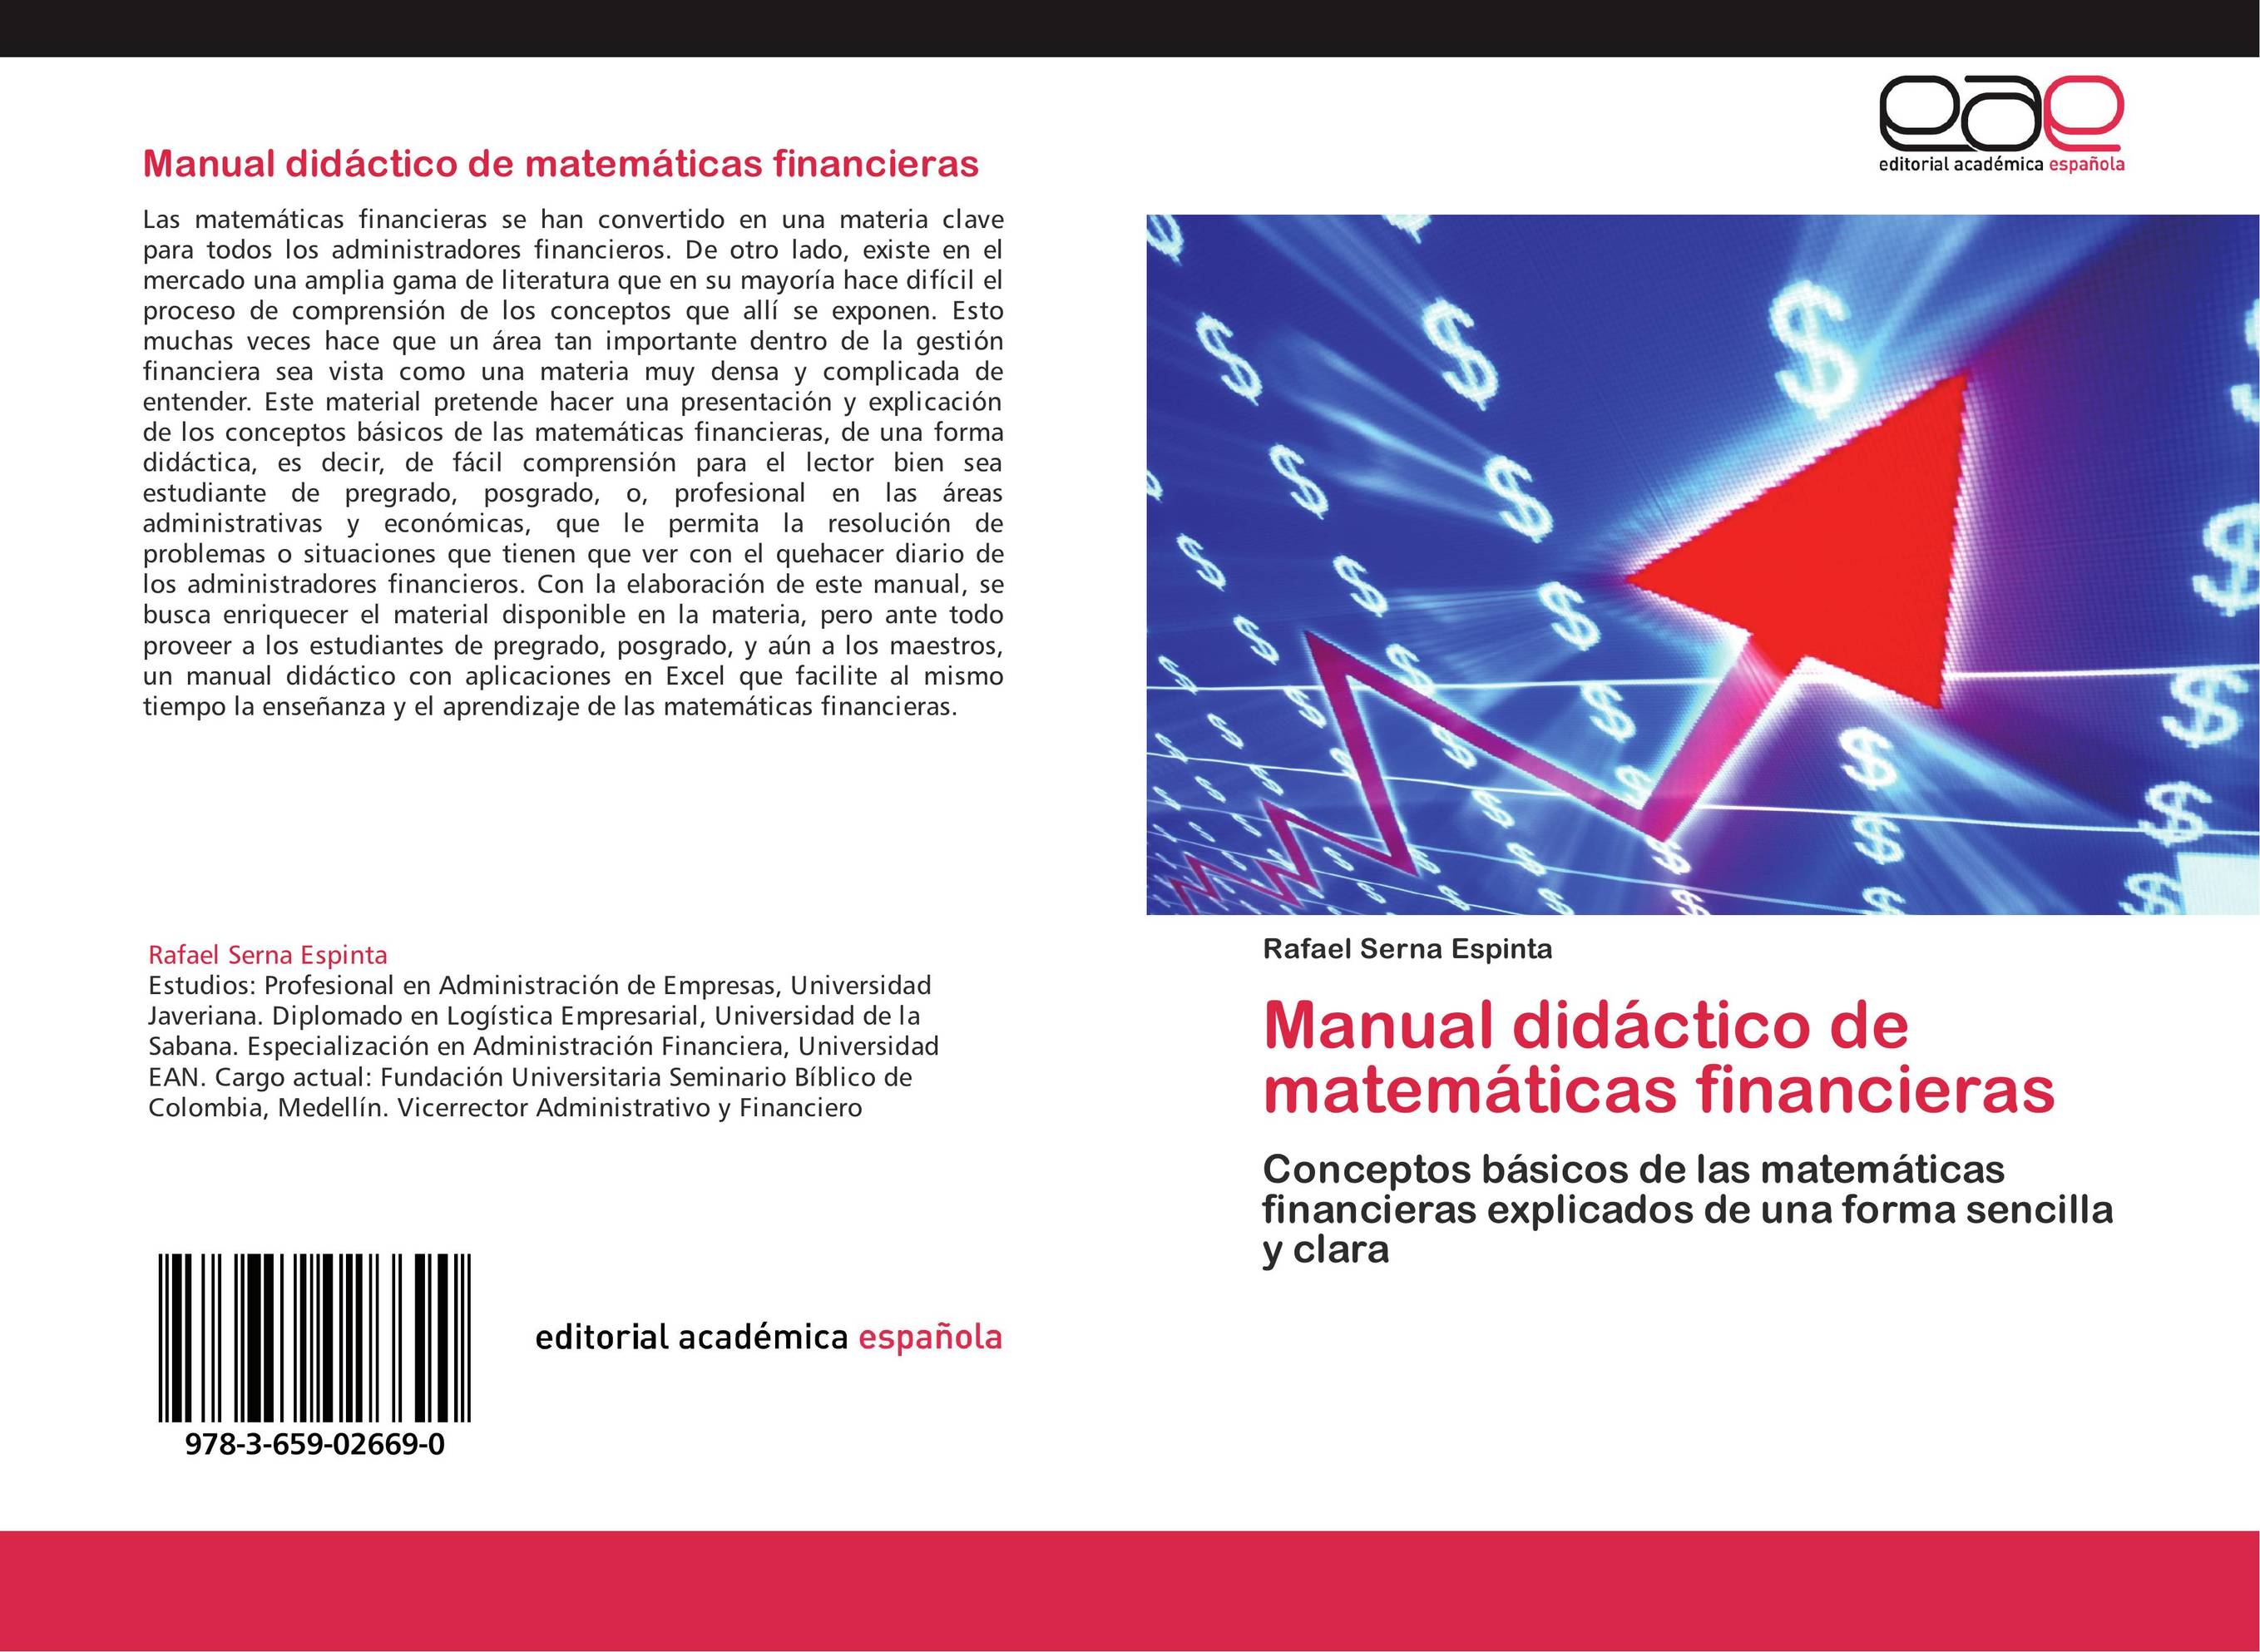 Manual didáctico de matemáticas financieras